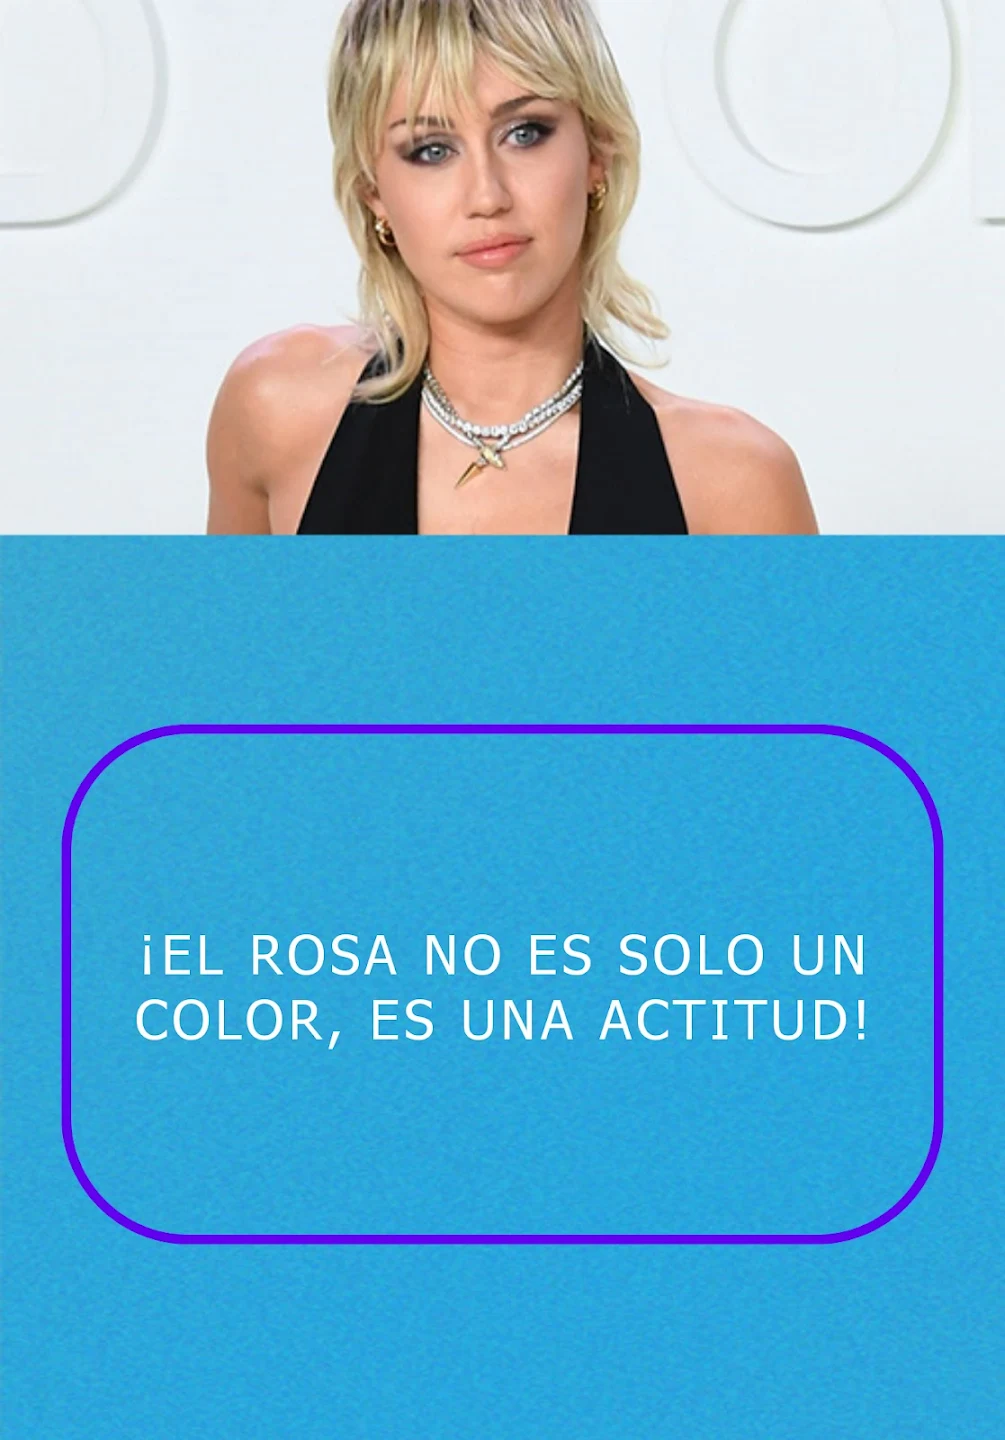 Tải Miley Cyrus frases App trên PC với giả lập - LDPlayer